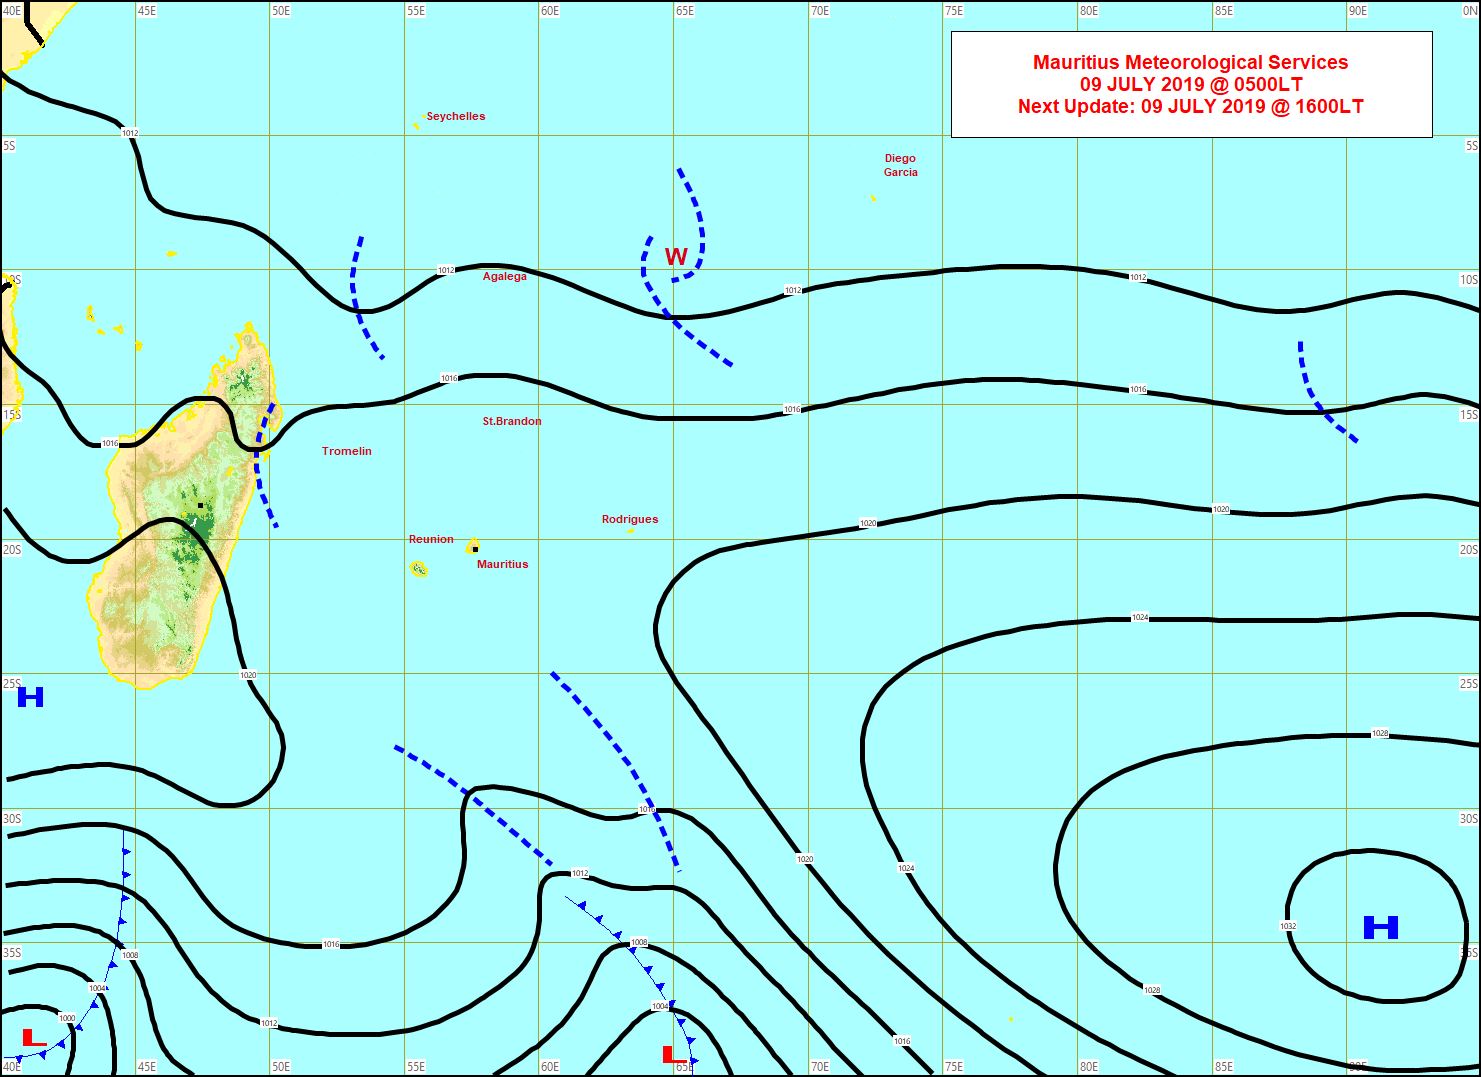 Analyse de la situation de surface ce matin. Les vents sont faibles sur les Iles Soeurs ce mardi. Les conditions changent pour la seconde partie de la semaine. MMS